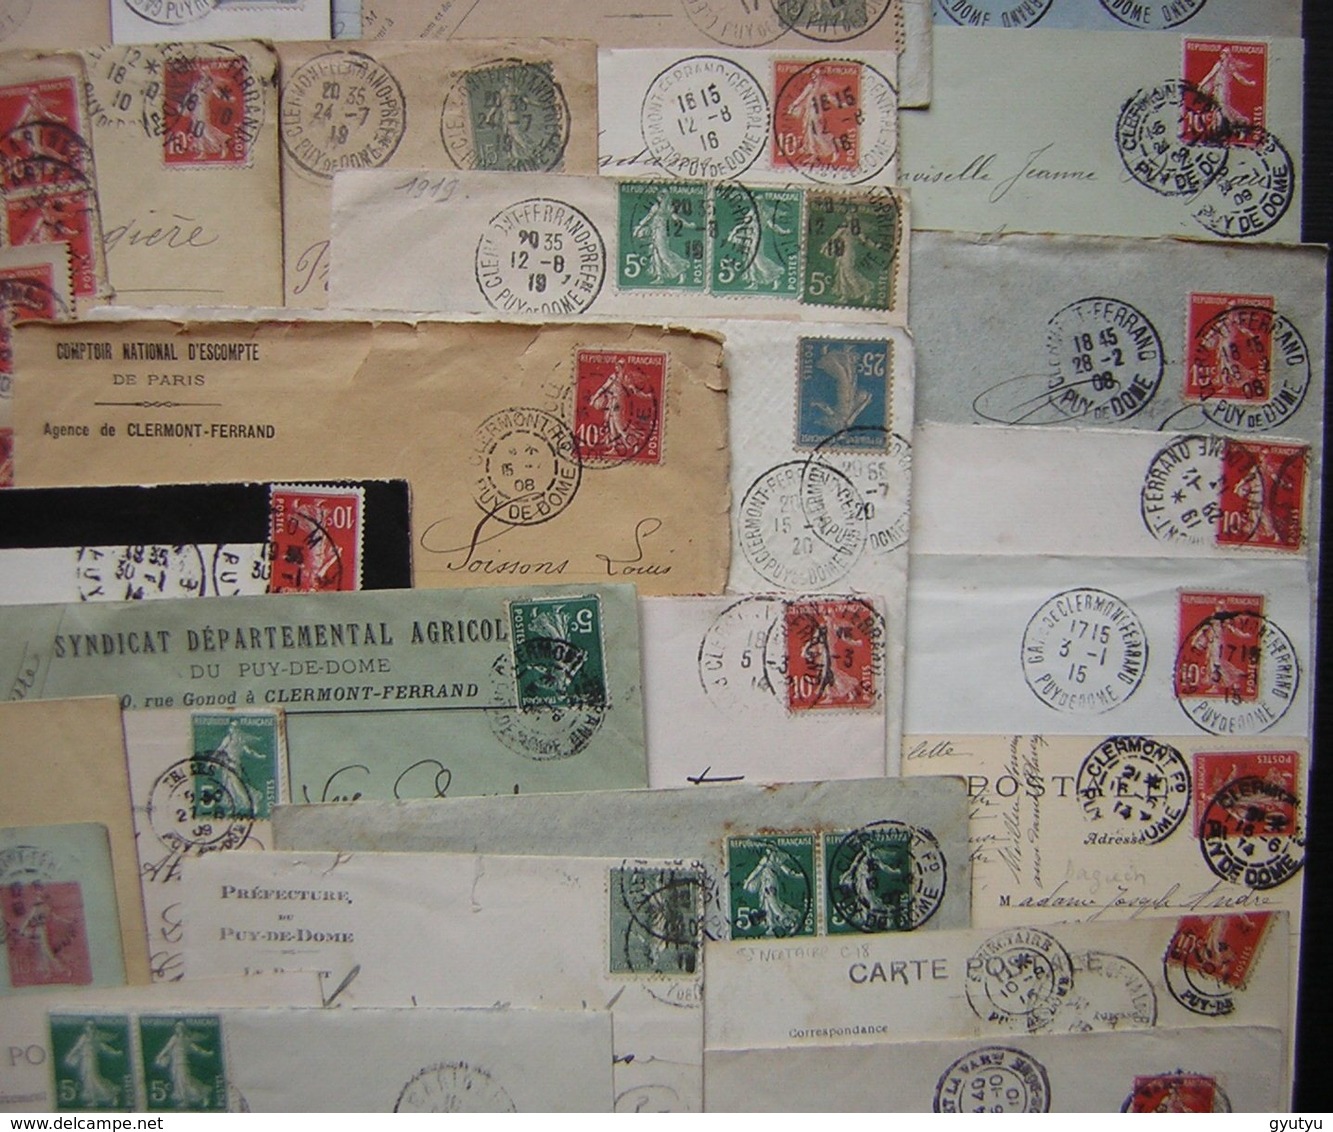 Puy de Dôme, lot de plus de 60 lettres et cartes avant 1921 différentes communes, voir photos de détail !